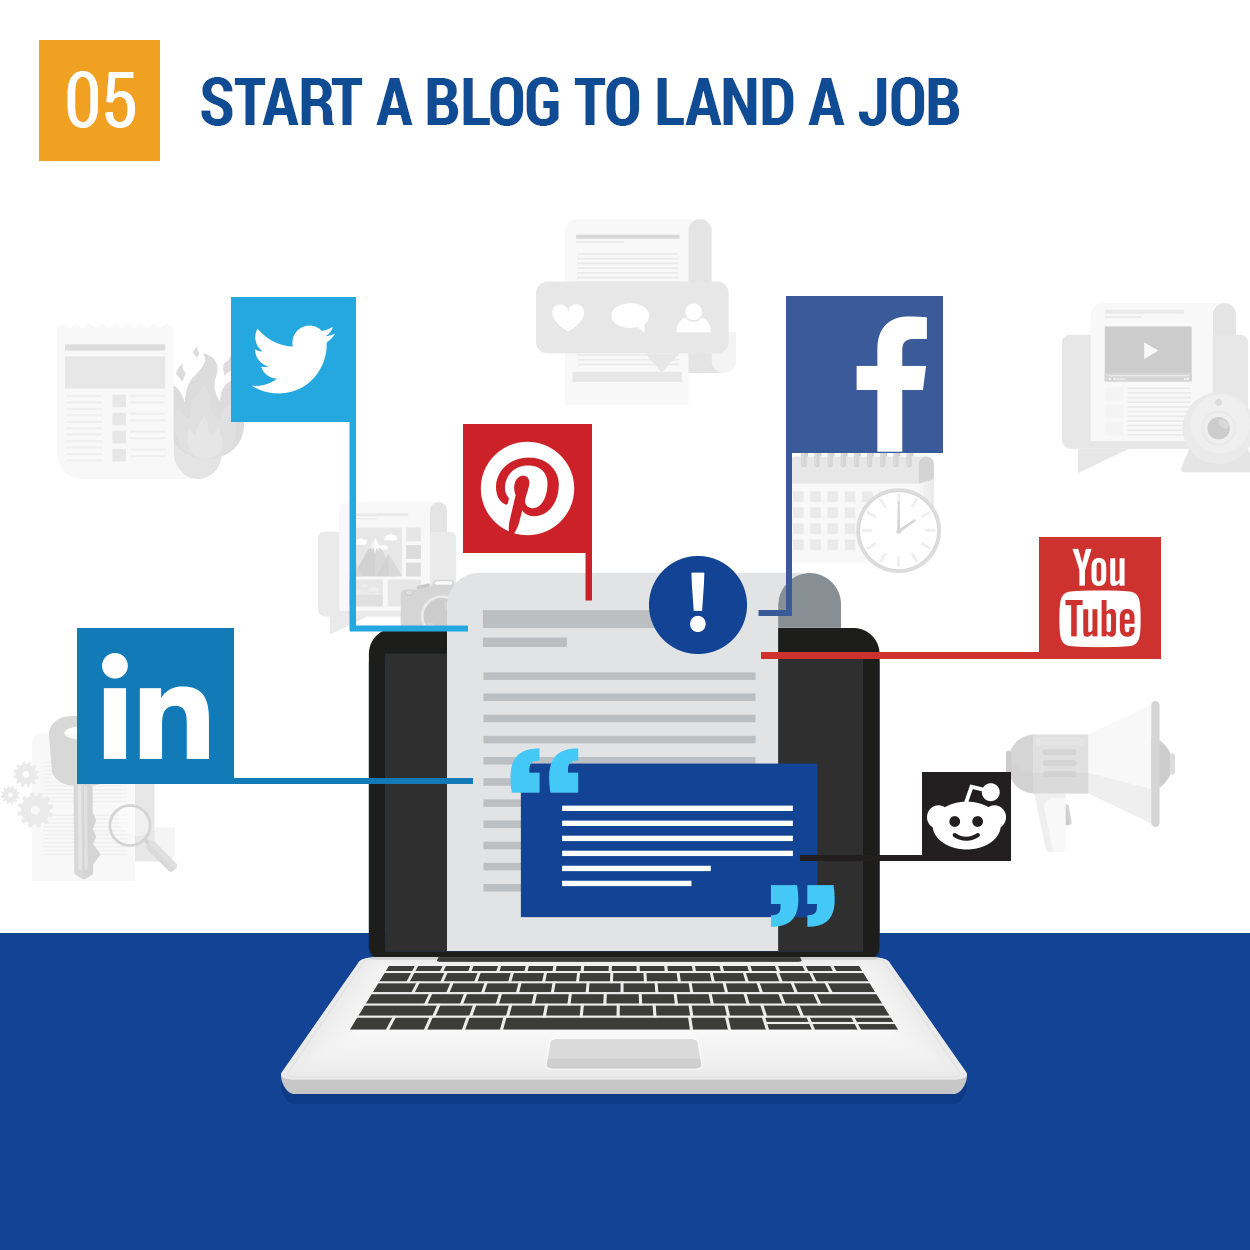 Start a blog to land a job